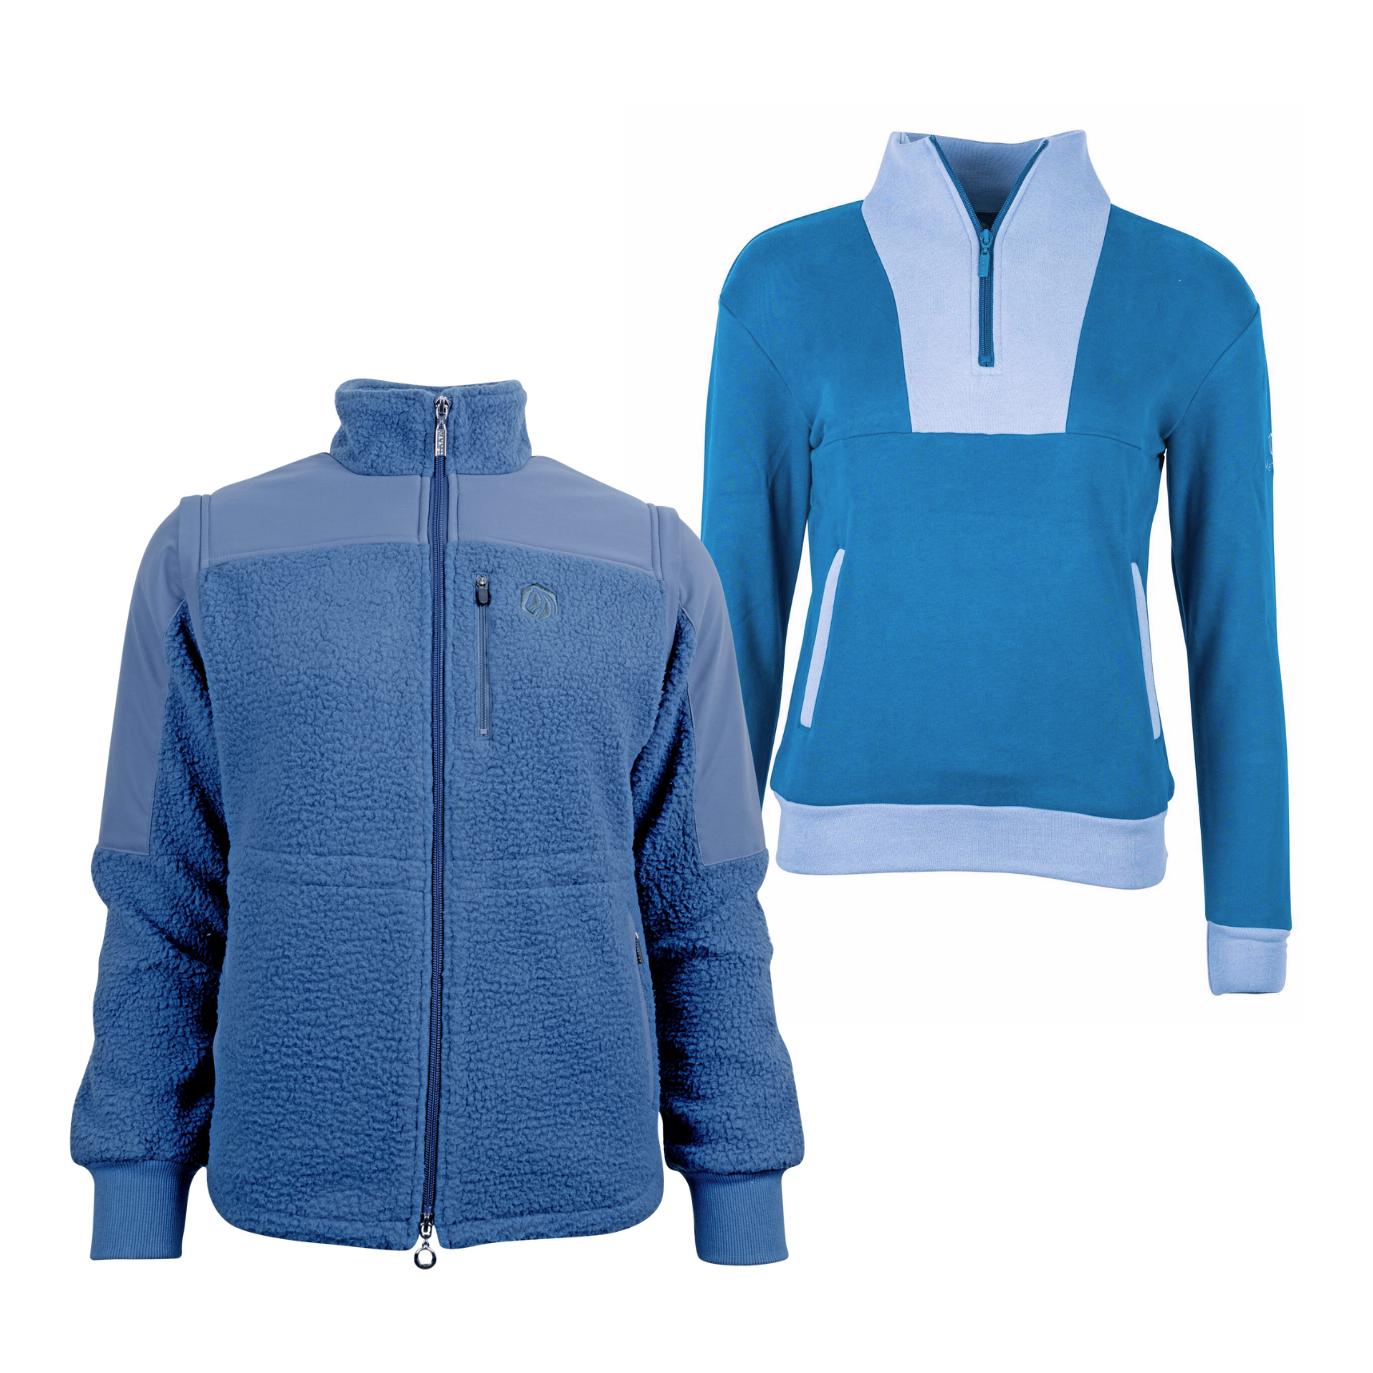 Marengo Outfit-Set Cosy Rides - Teddyfleece-Jacke & Zip Sweatshirt Farbe: Calm Blue / Ocean Blue, Grösse Jacke: L, Grösse Pullover: M von Marengo